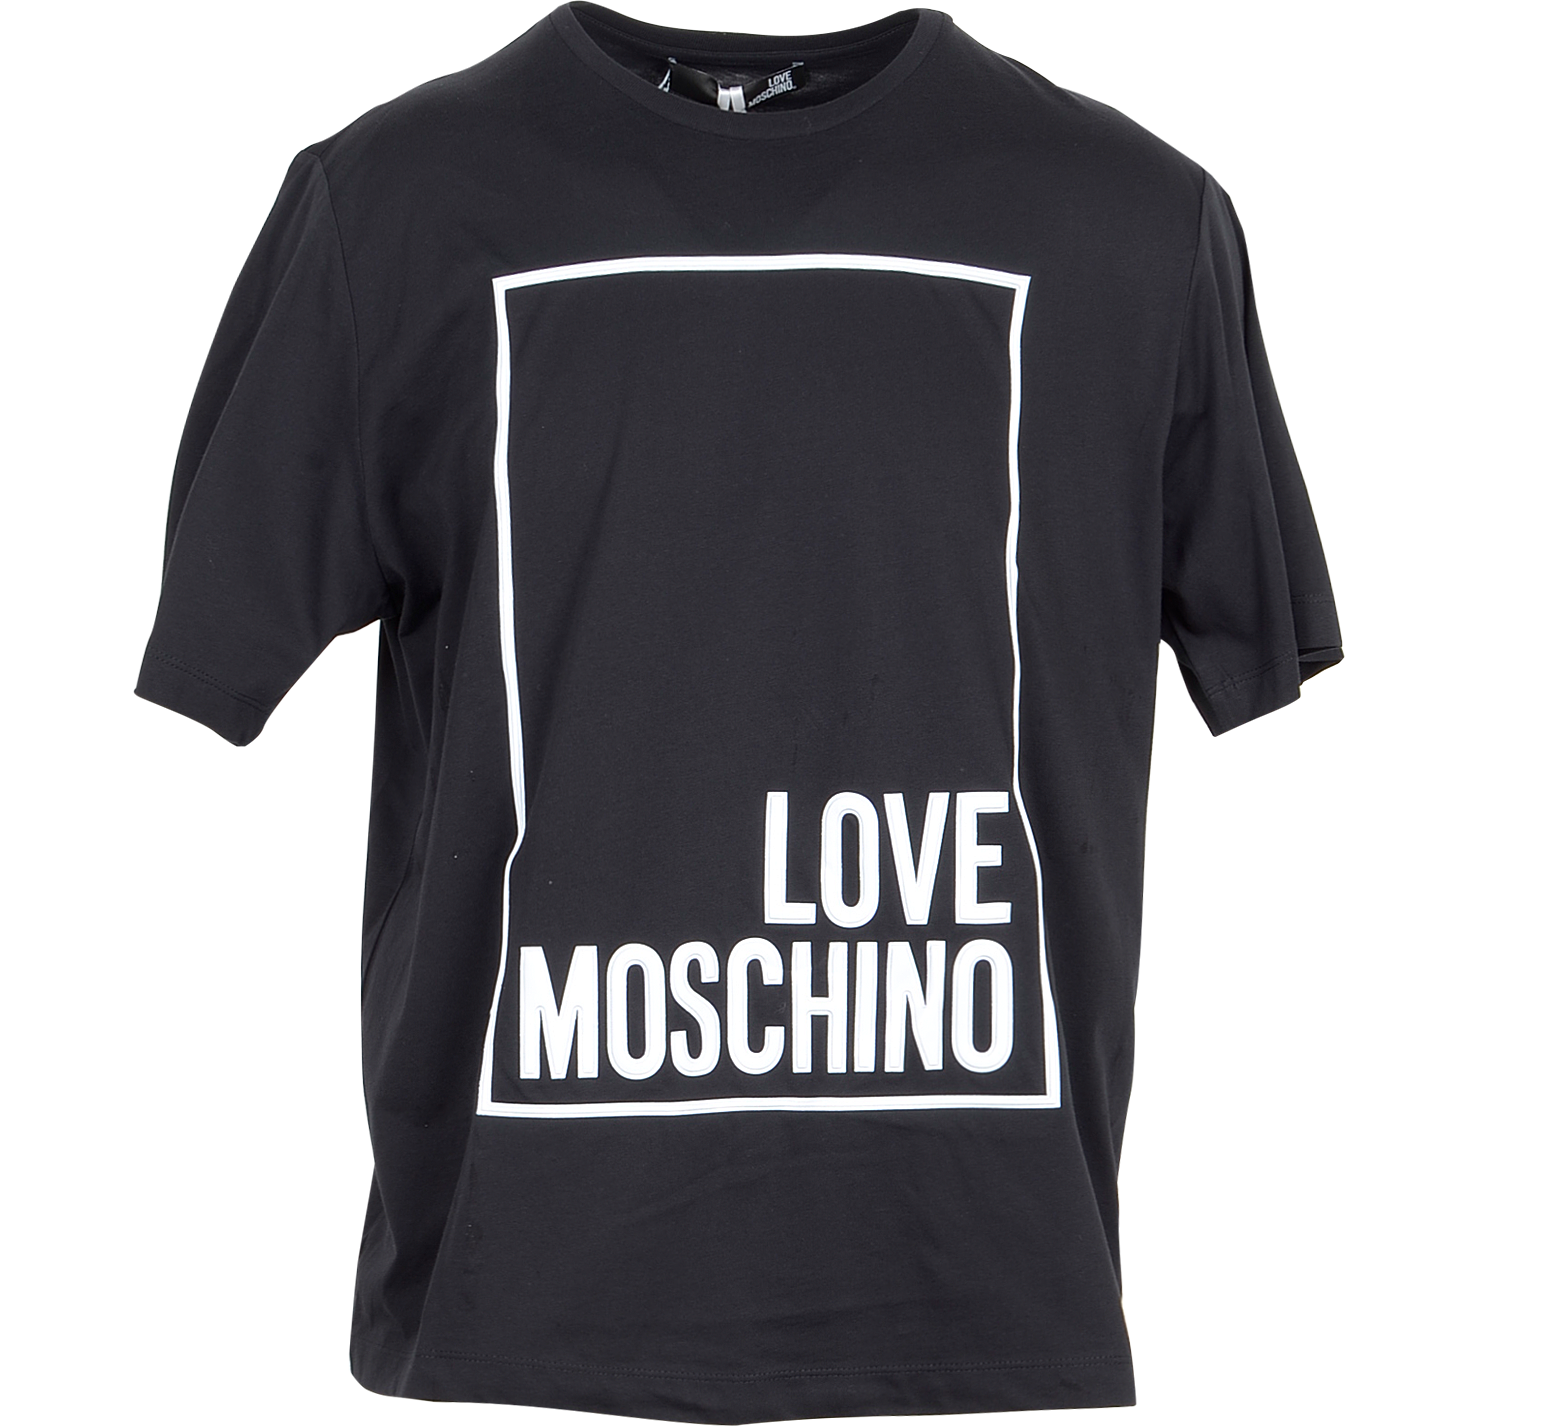 love moschino tops womens